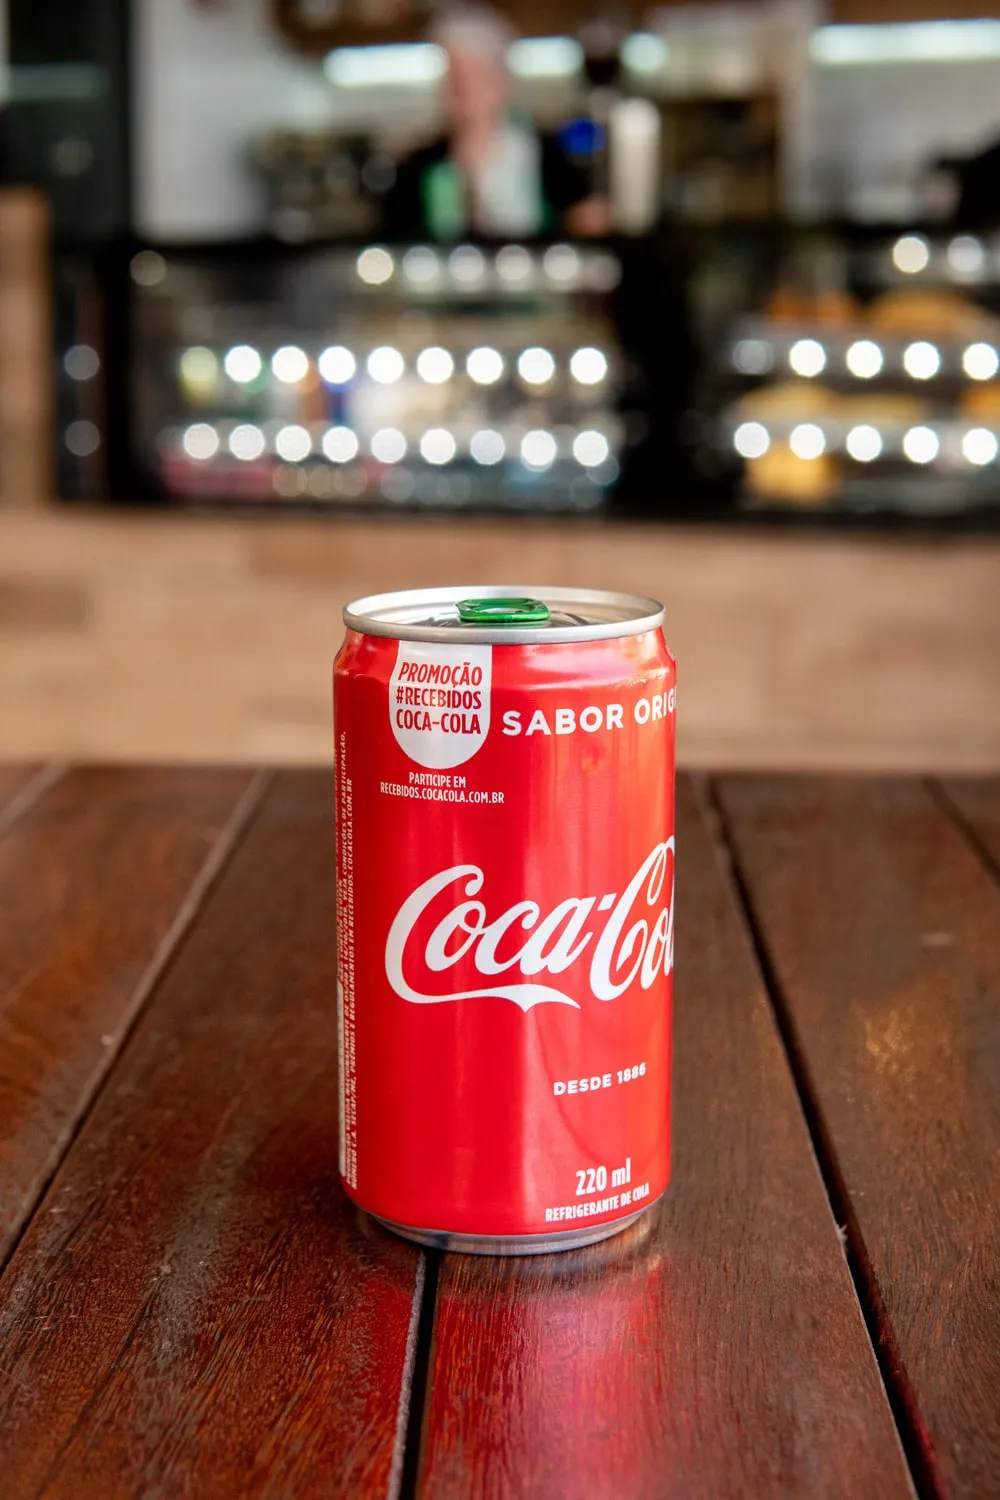 Plechovka Coca-Coly za 13 eur? Ceny na jednom z nejoblíbenějších evropských ostrovů rostou